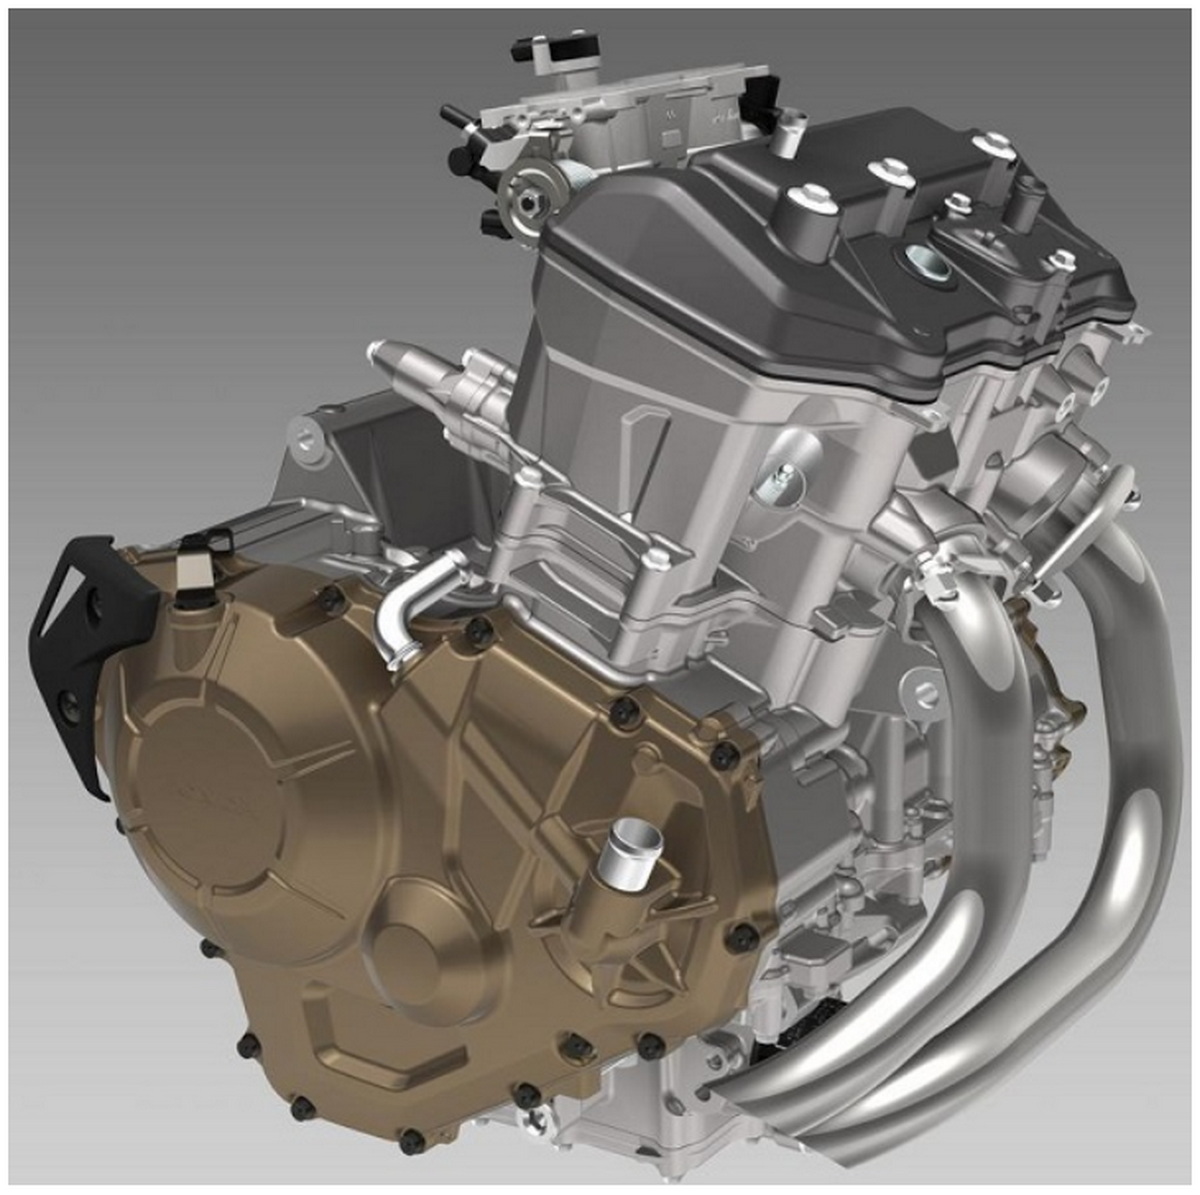 Новая платформа Honda: 2-цилиндровый рядный двигатель 750 куб.см.